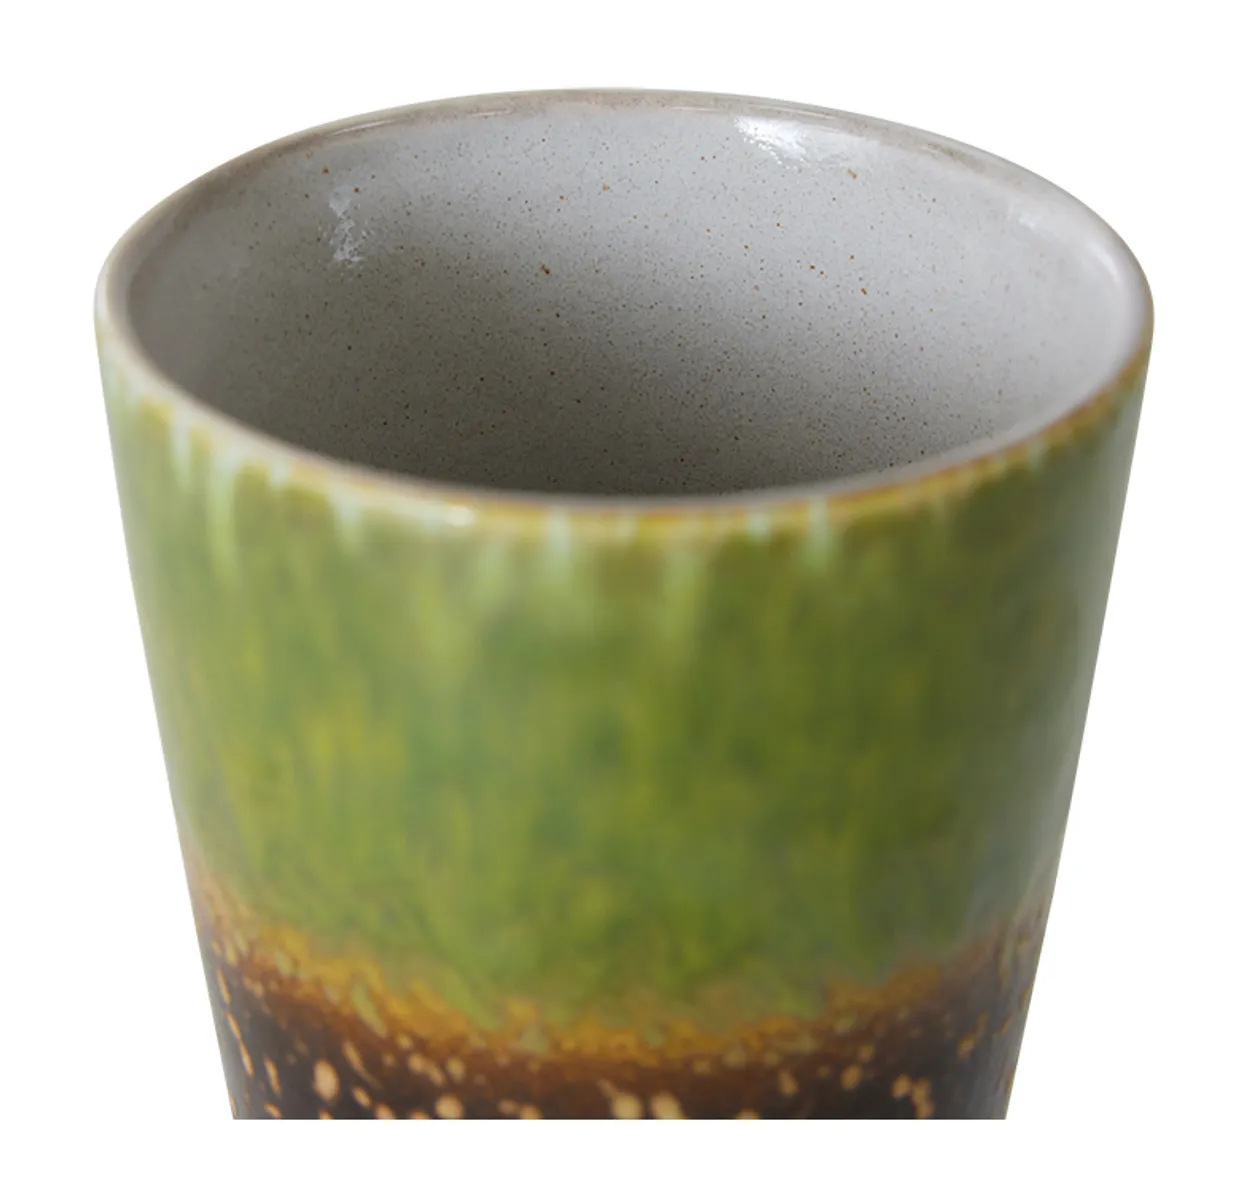 70s ceramics: tea mug, algae